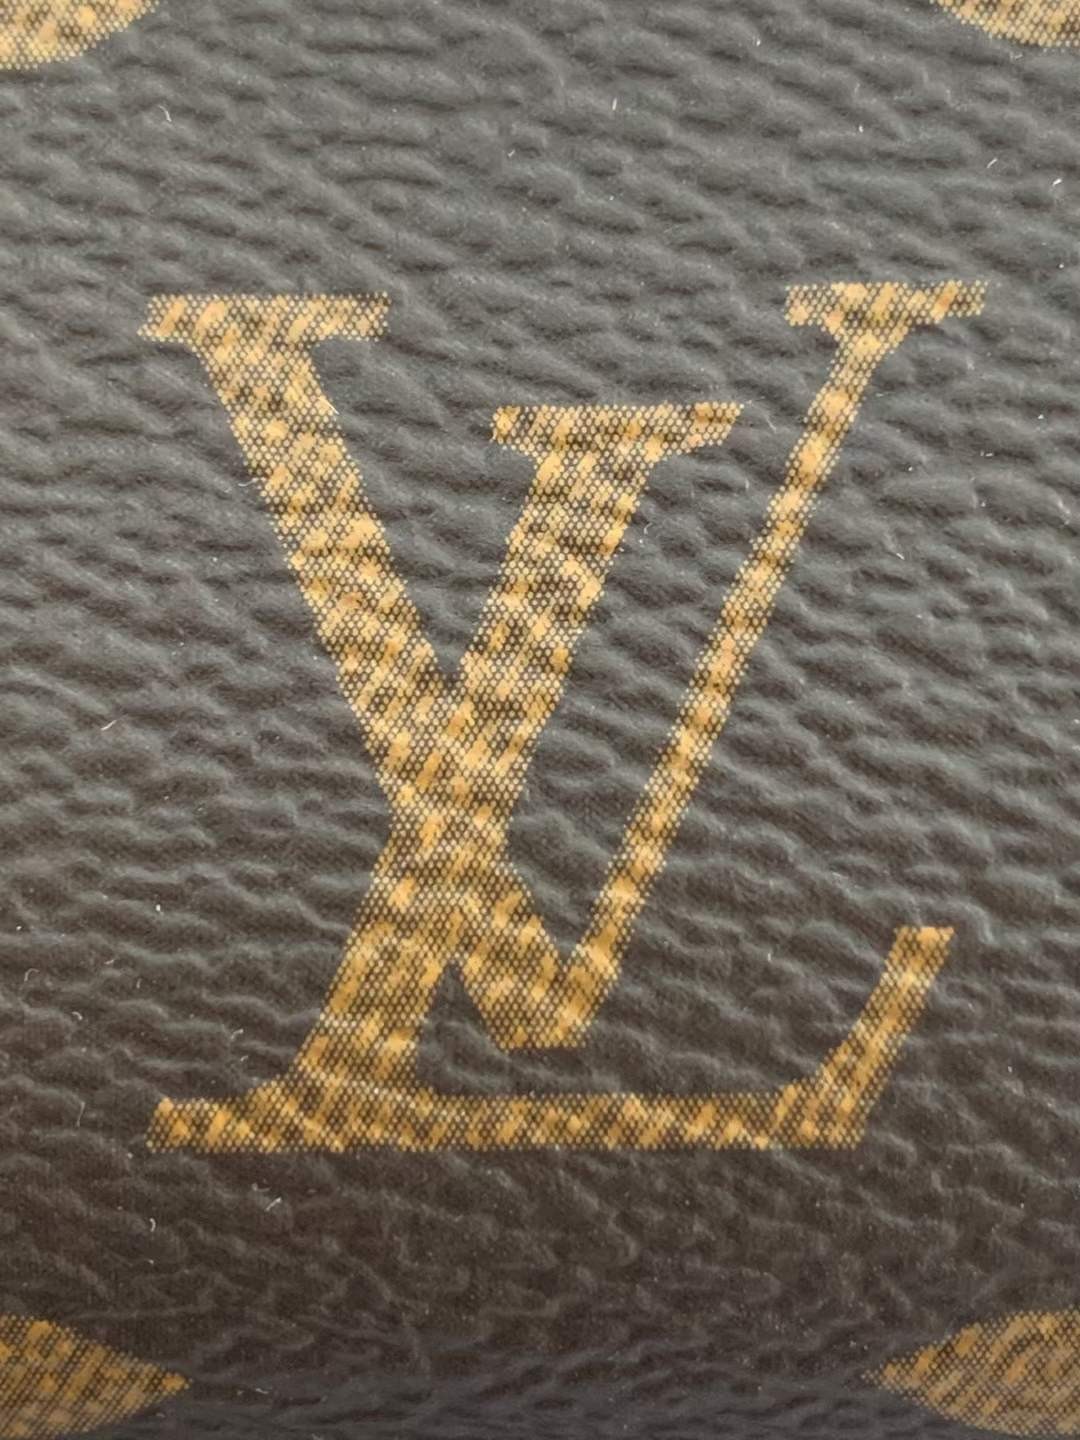 Louis Vuitton M40712 Pochette Accessoires 23.5 x 13.5 x 4 cm Leather surface details (2022 Edition)-Best Quality Fake designer Bag Review, Replica designer bag ru